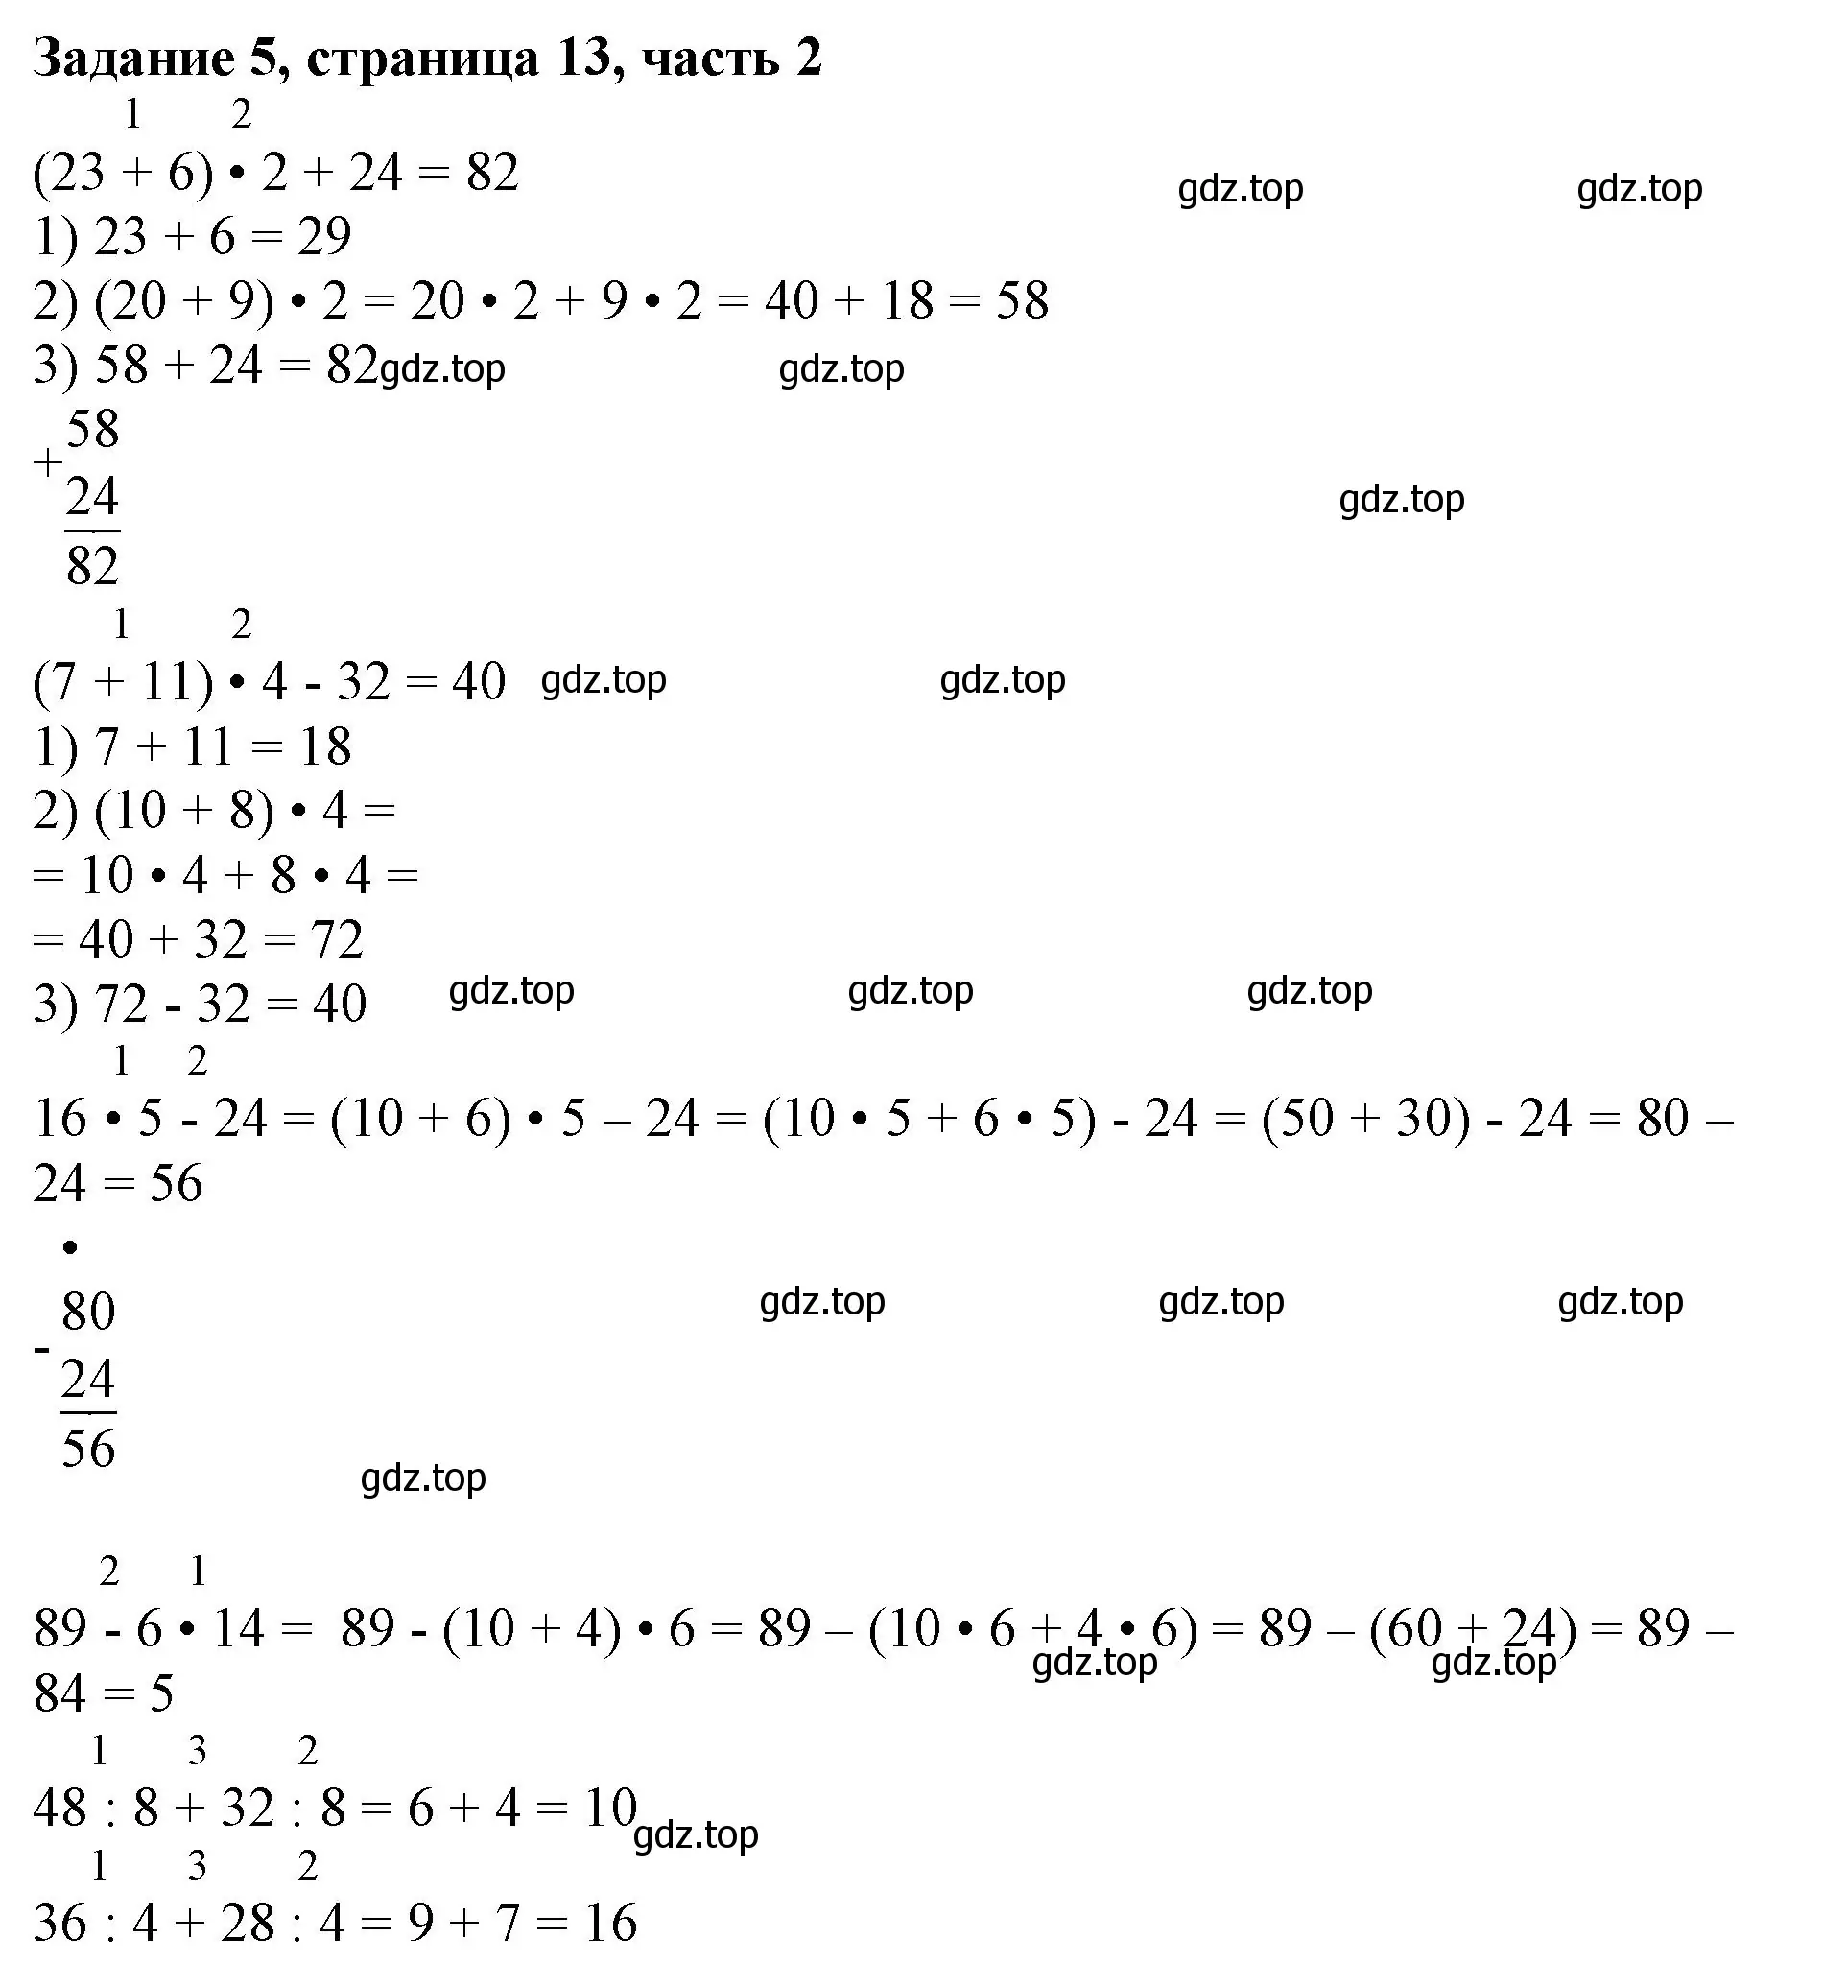 Решение номер 5 (страница 13) гдз по математике 3 класс Моро, Бантова, учебник 2 часть